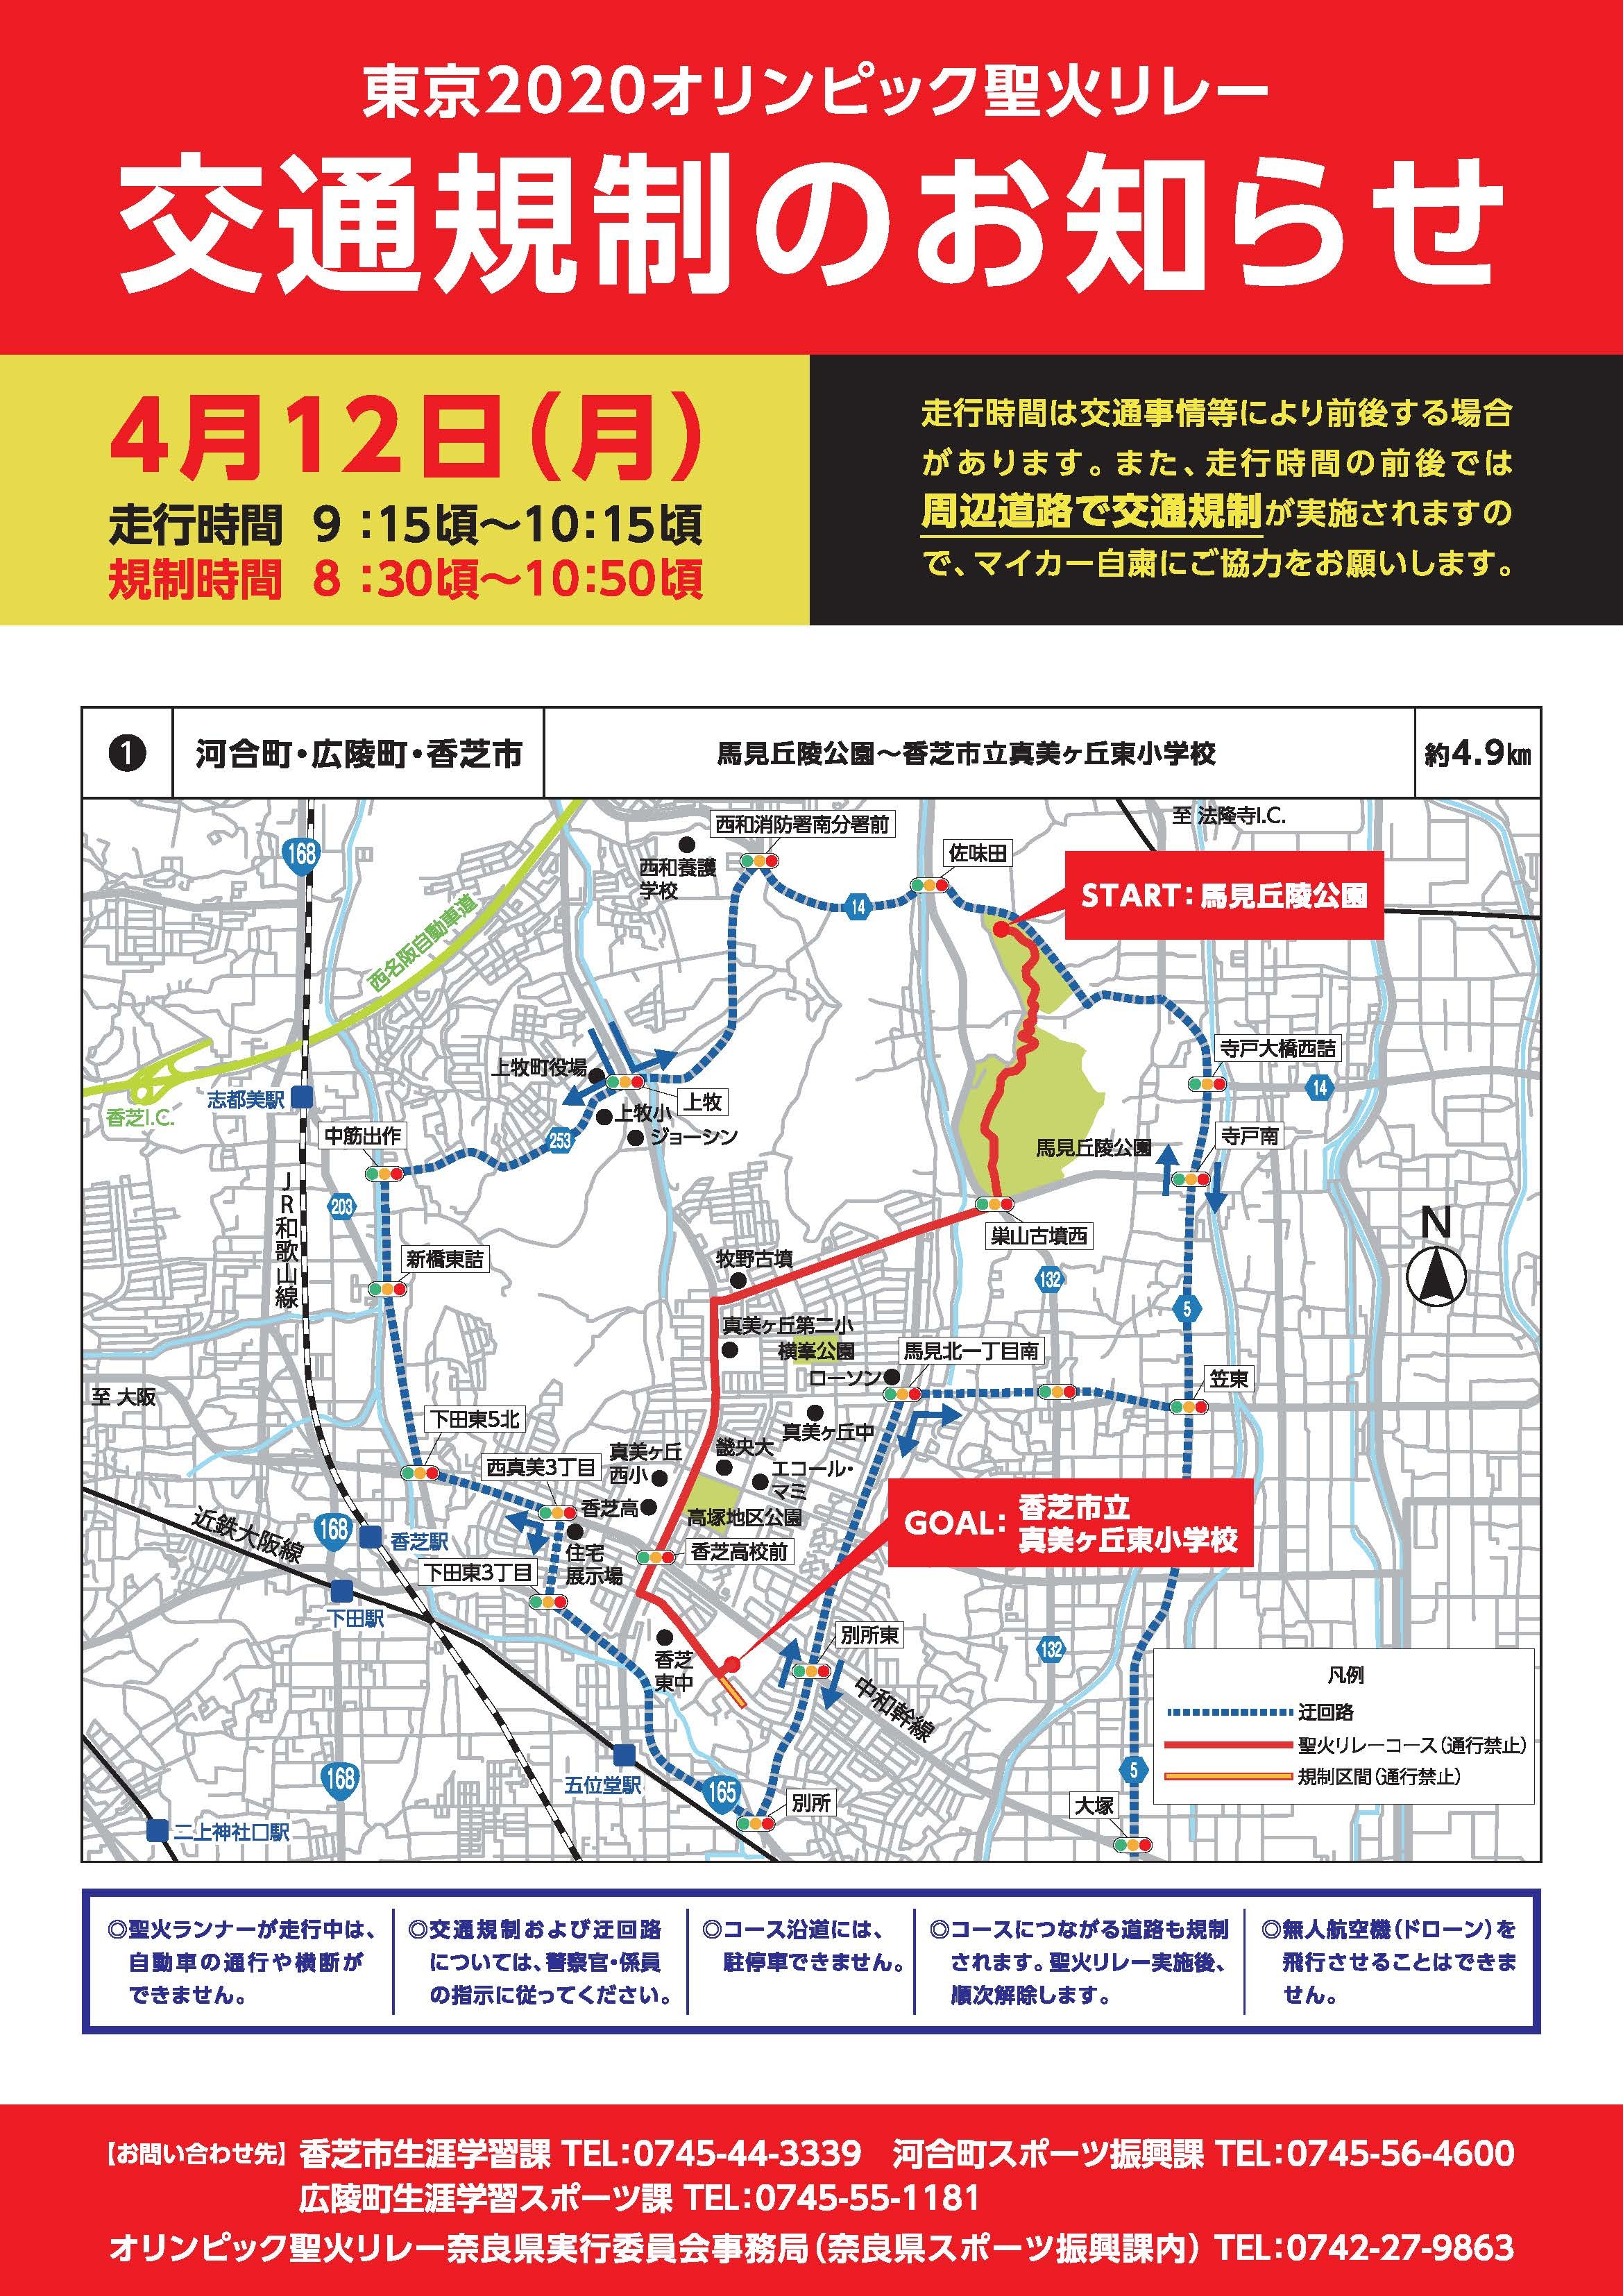 東京2020オリンピック聖火リレー交通規制のお知らせ